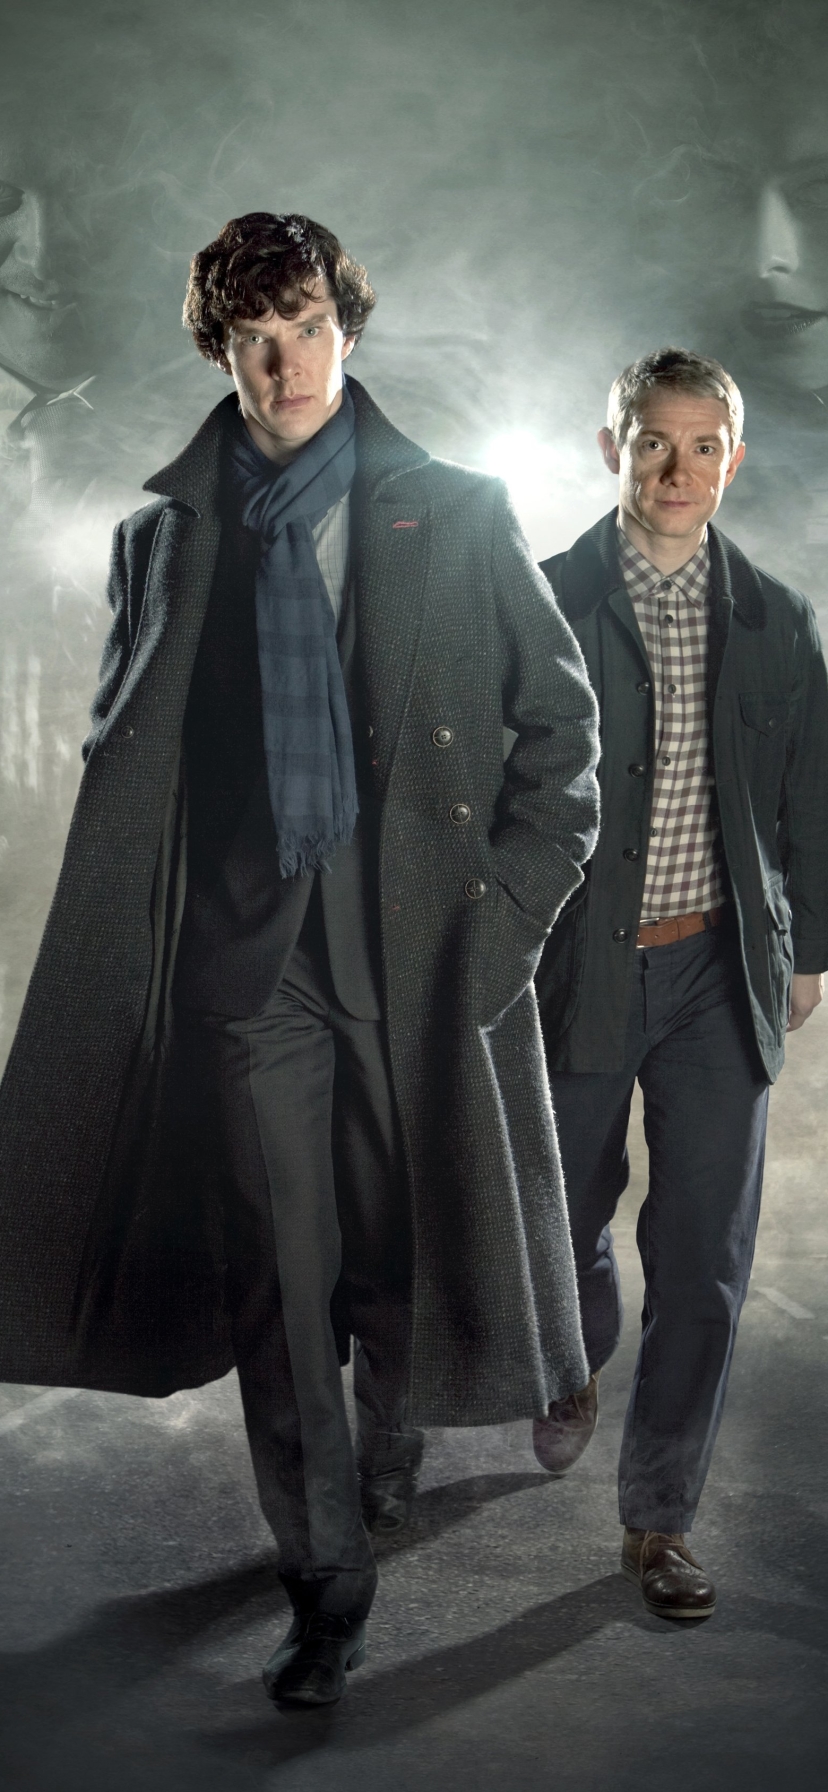 Descarga gratuita de fondo de pantalla para móvil de Sherlock, Benedict Cumberbatch, Series De Televisión, Actor, Sherlock Holmes, Doctor Watson, Martín Freeman.